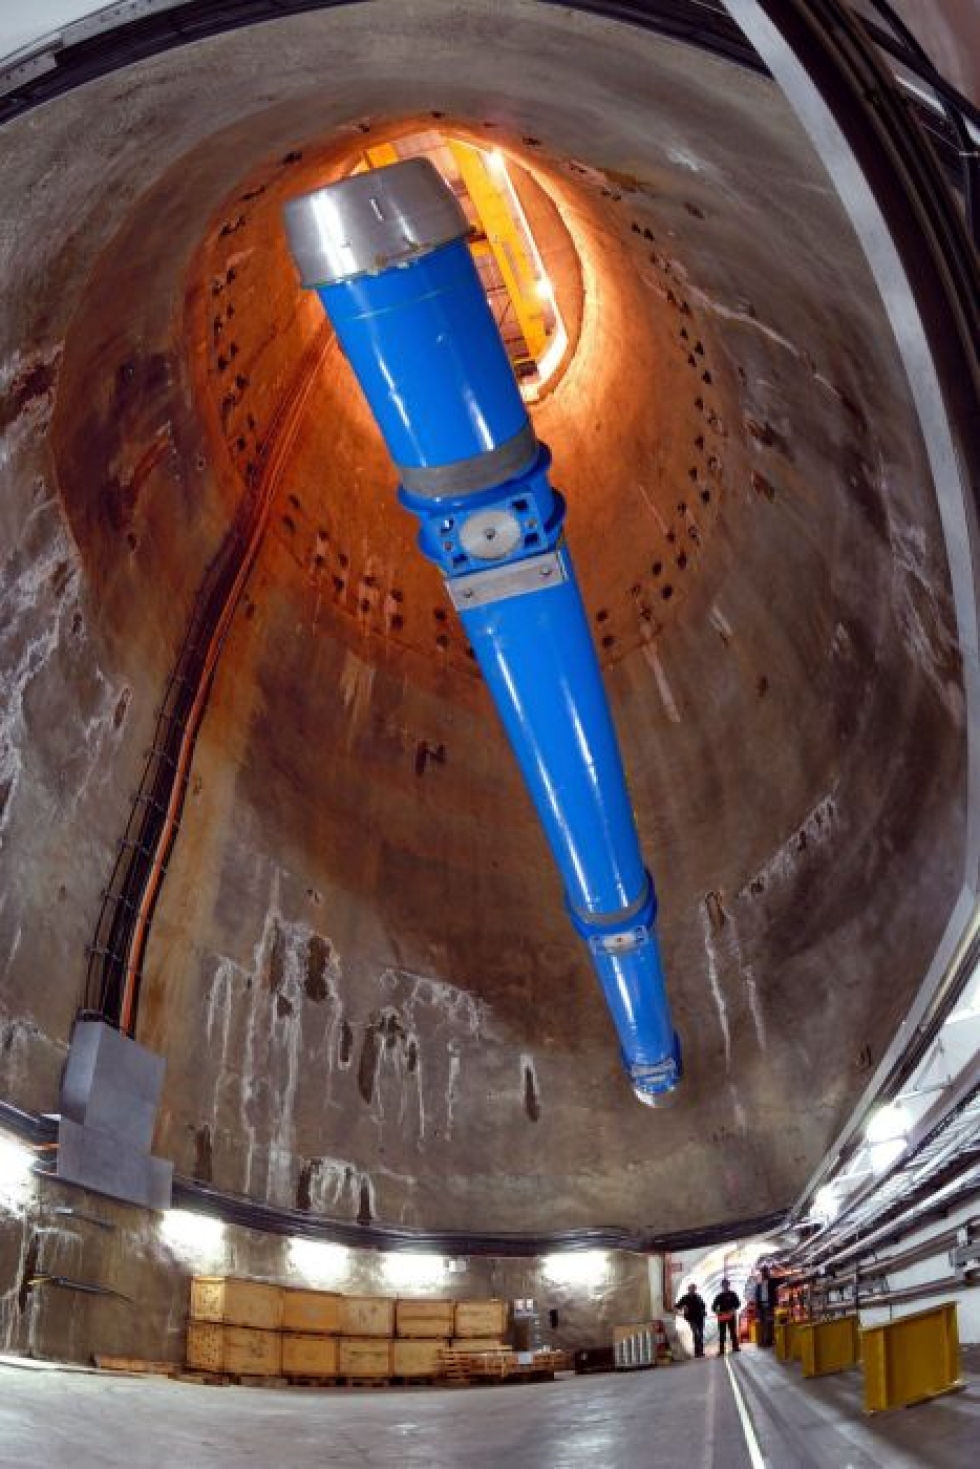 Cernin kiihdytin toimii 27 kilometriä pitkässä ympyrän muotoisessa tunnelissa. LEHTIKUVA / AFP